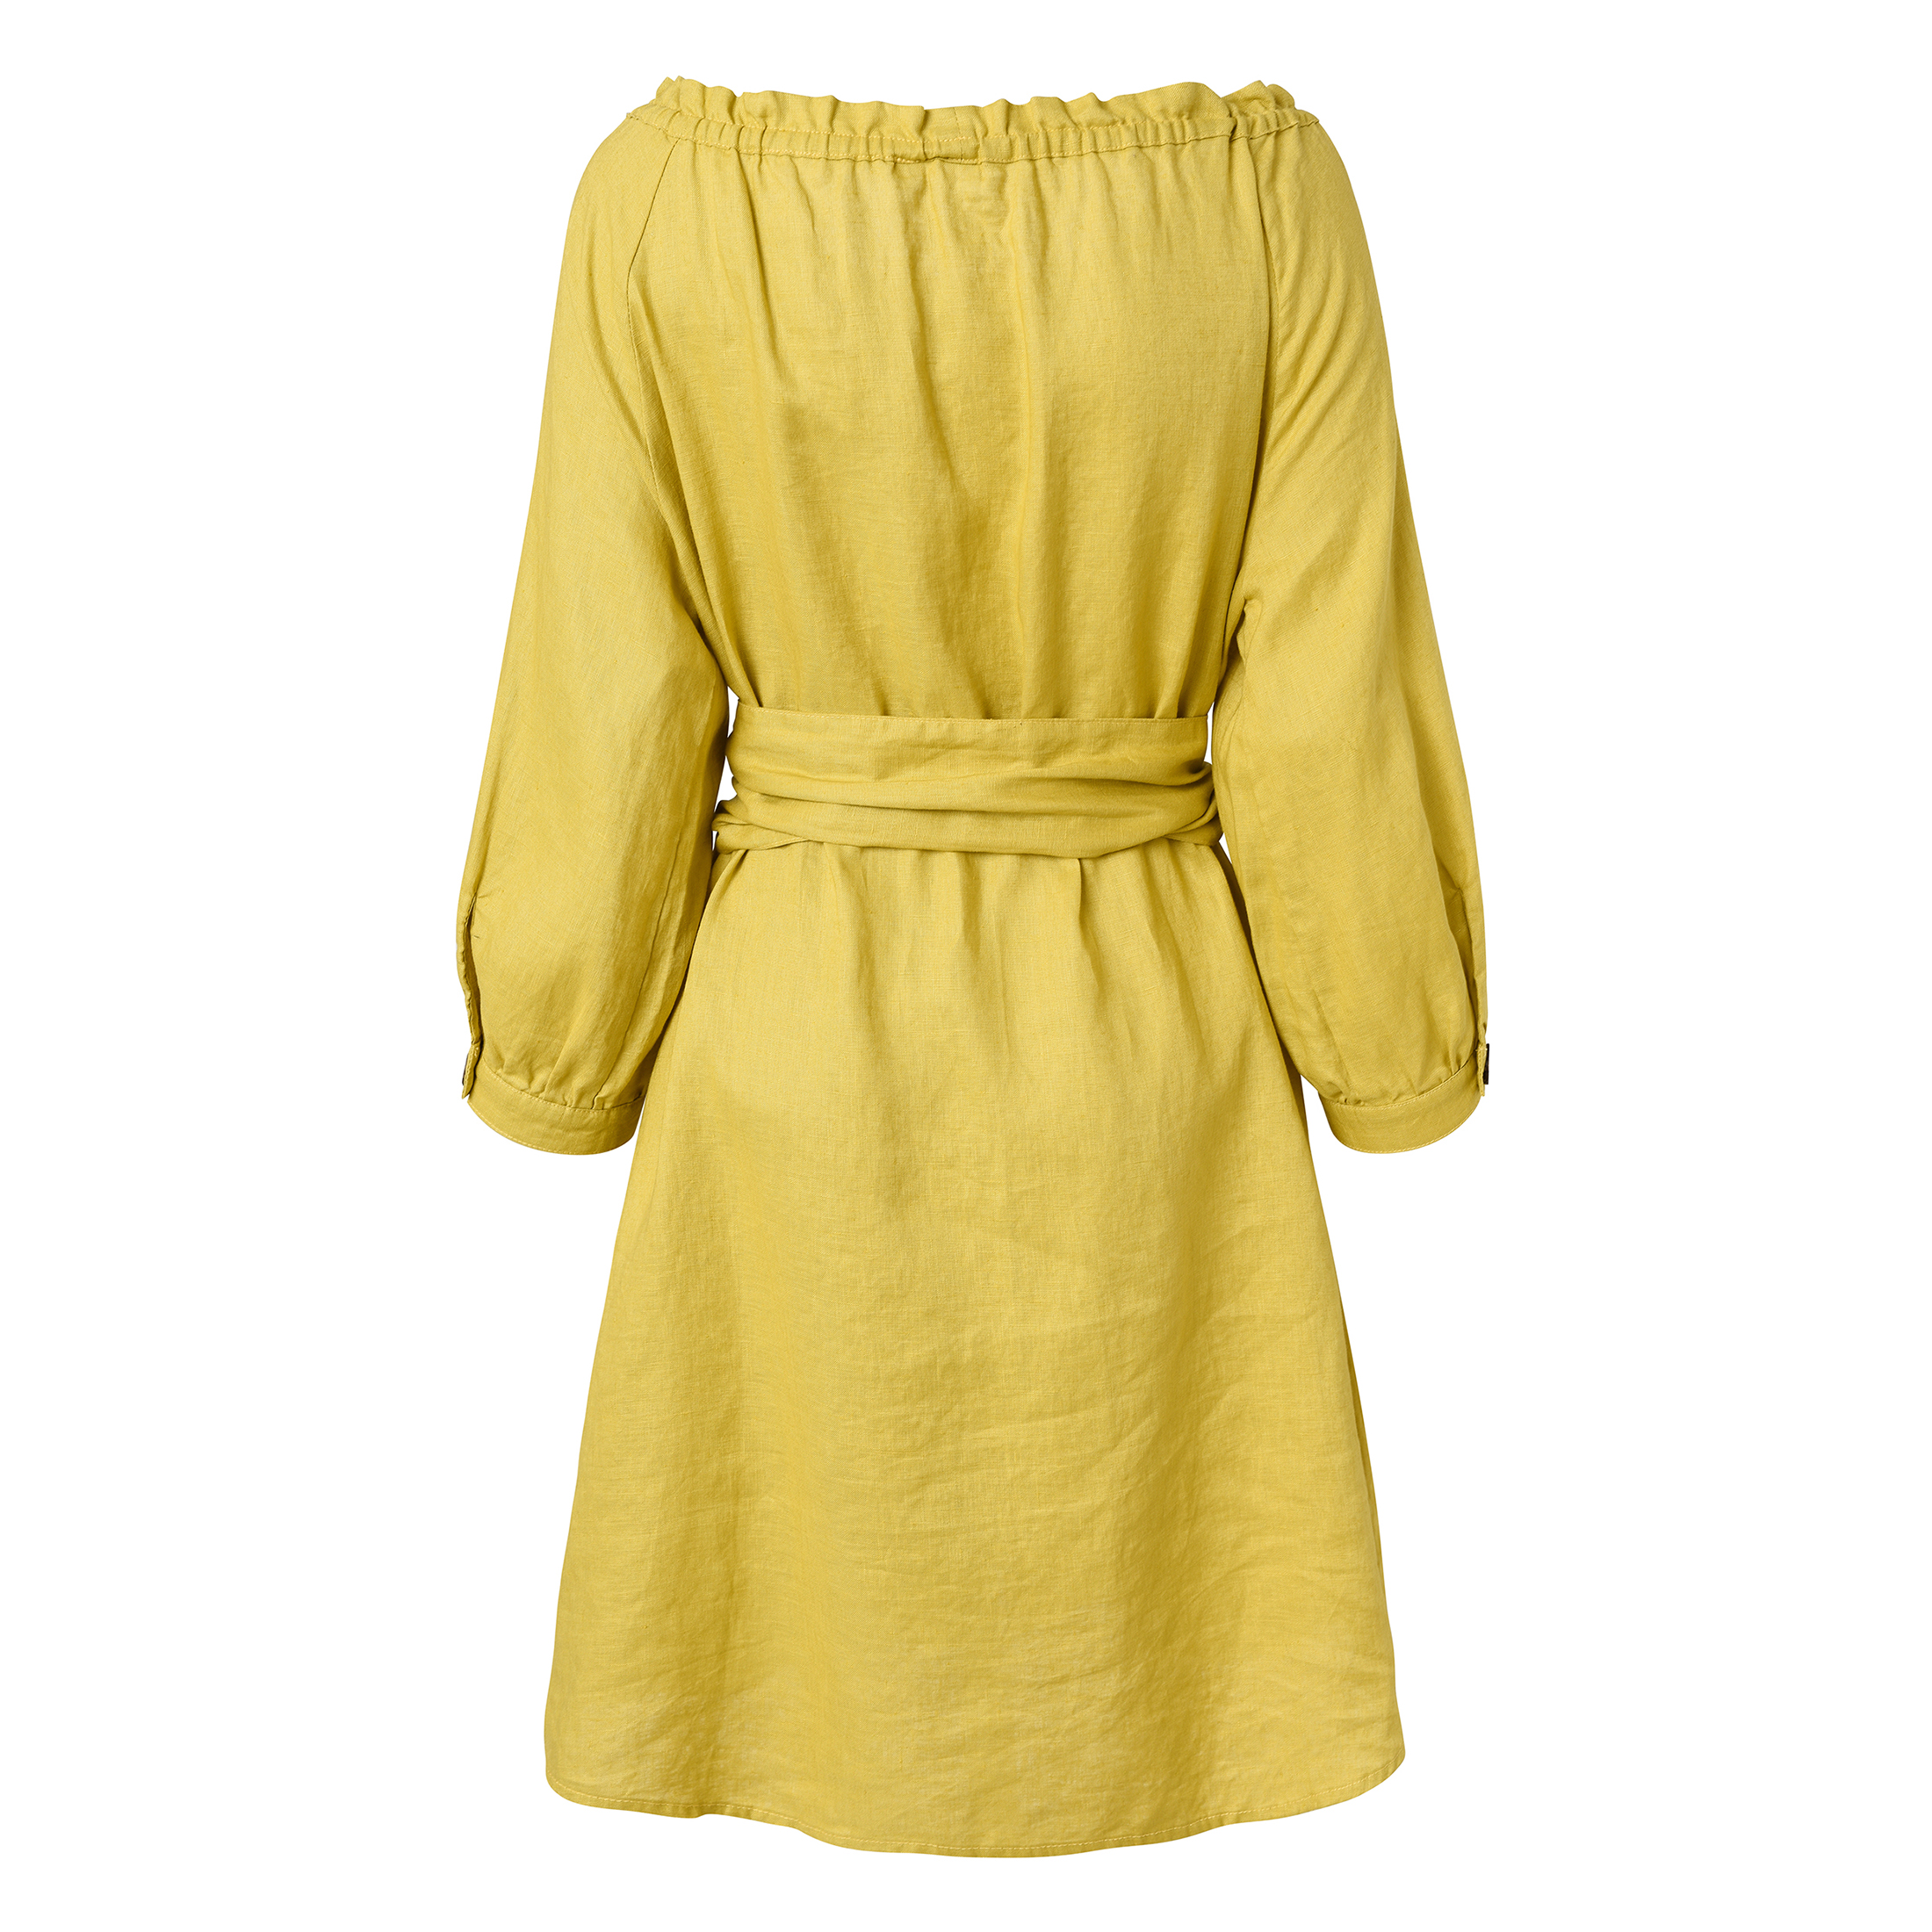 Fashion Women's Dress - New Design Long Summer Dress with Soft Linen Fabric